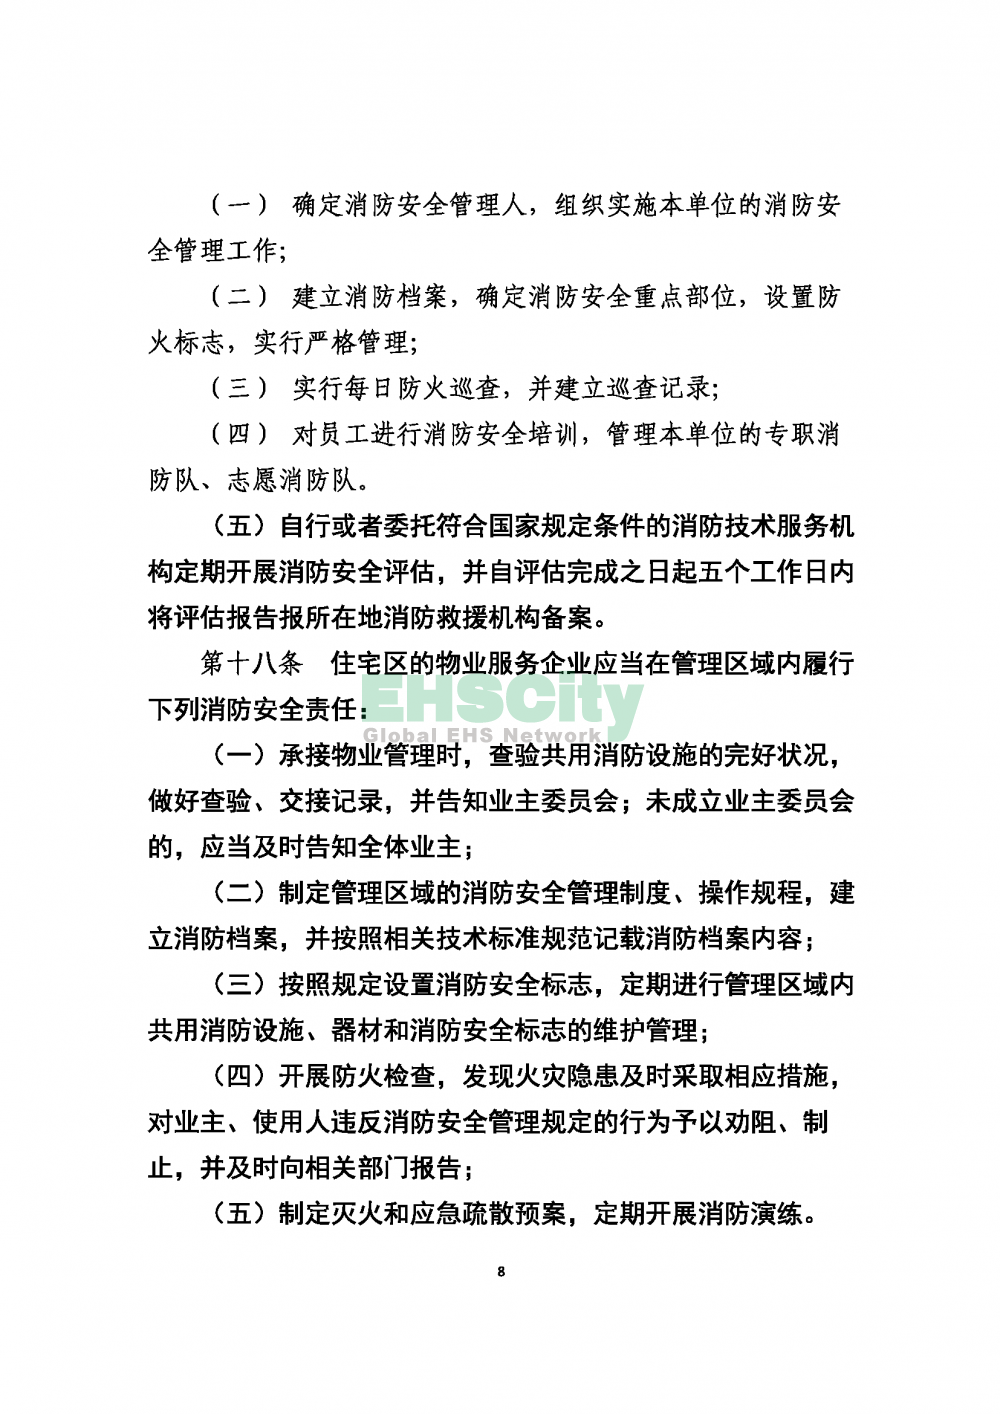 2020版上海消防条例_页面_08